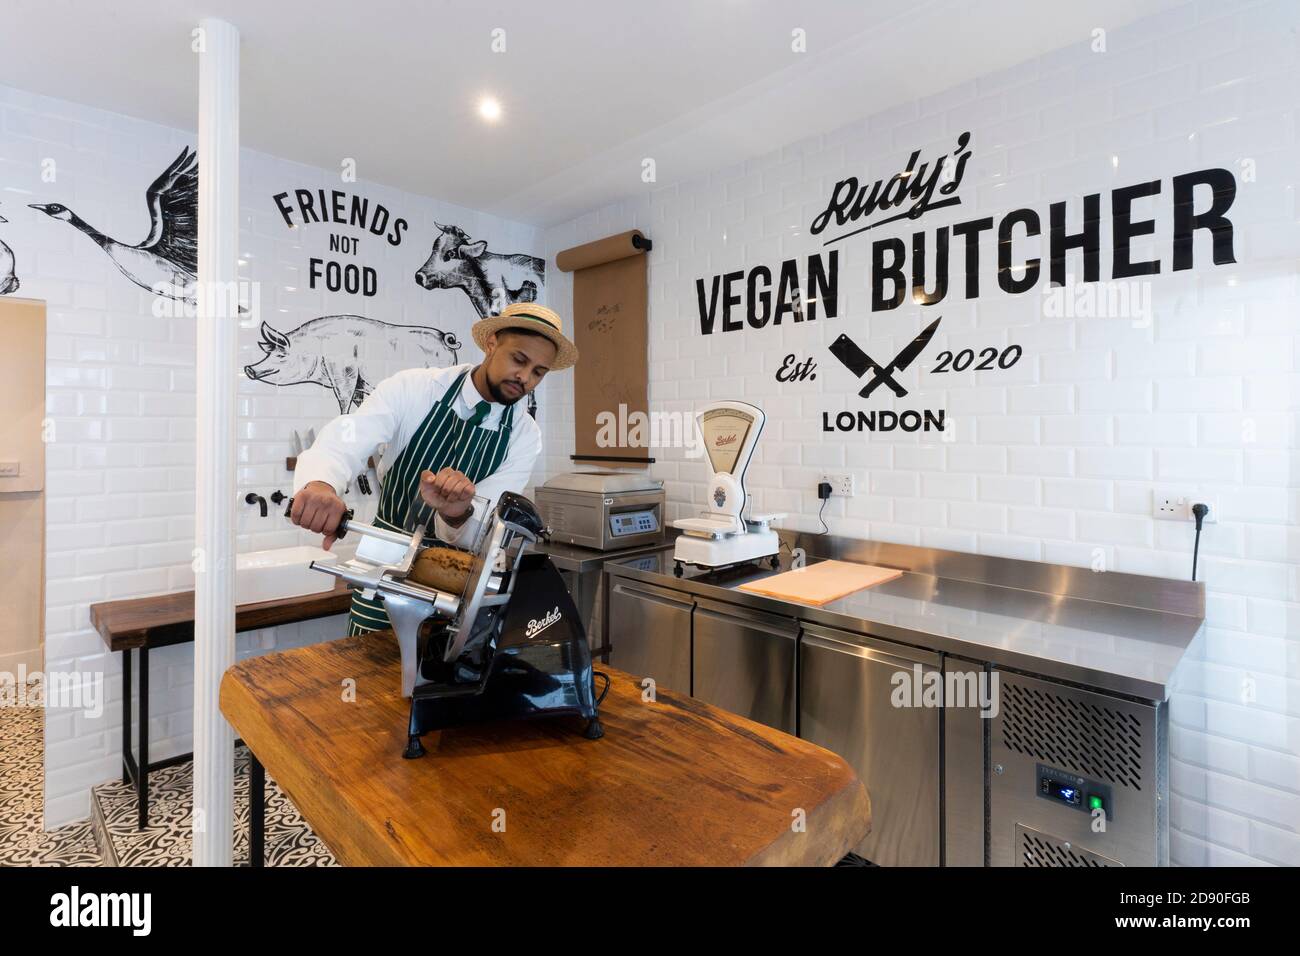 Rudys Vegan Butcher Delikatessengeschäft wird in Islington London eröffnet. Bild zeigt 'Metzger' Scheiben Fleischersatz. Stockfoto